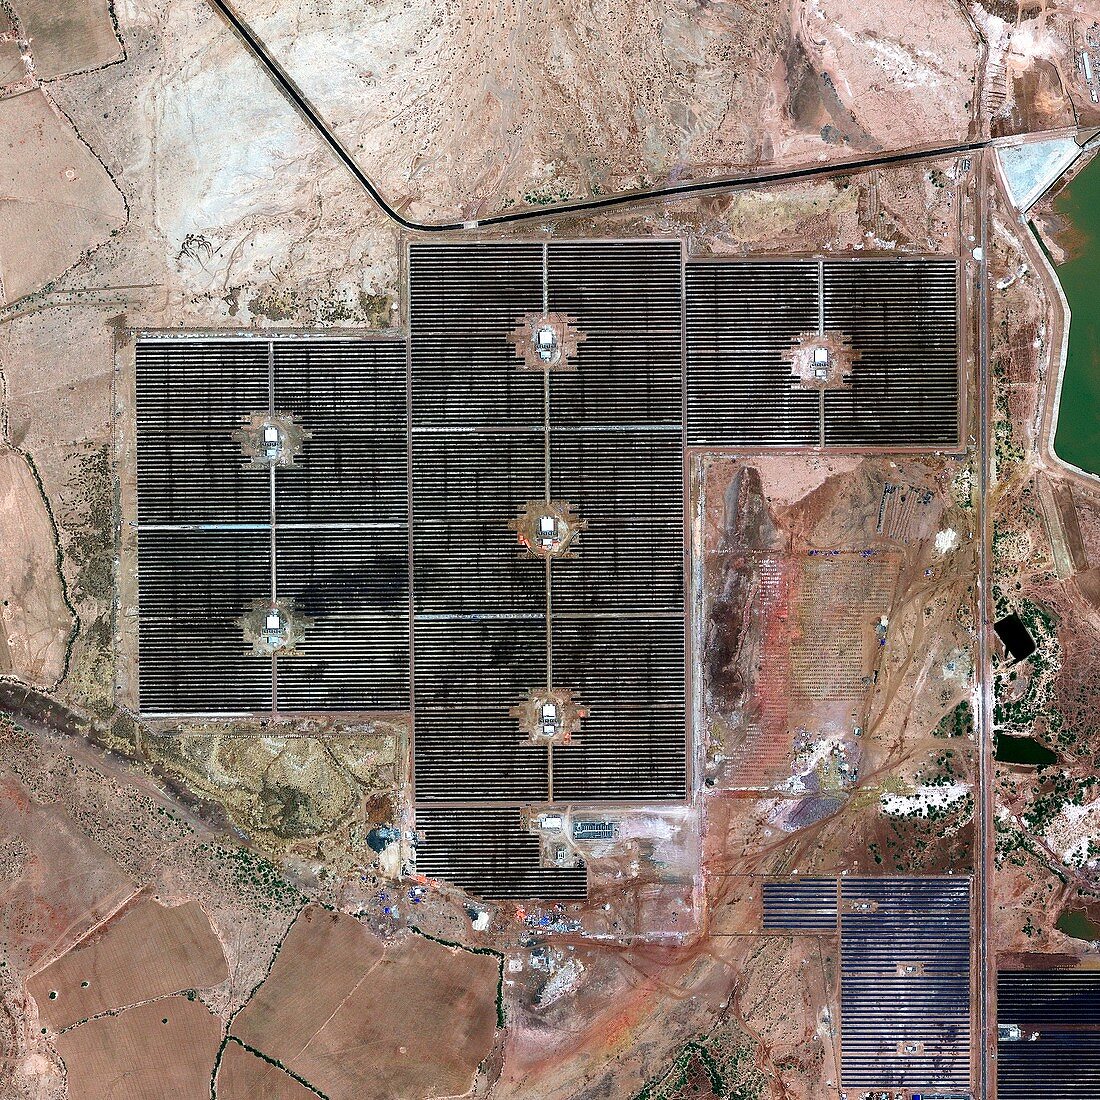 Gujarat Solar Park India,satellite image